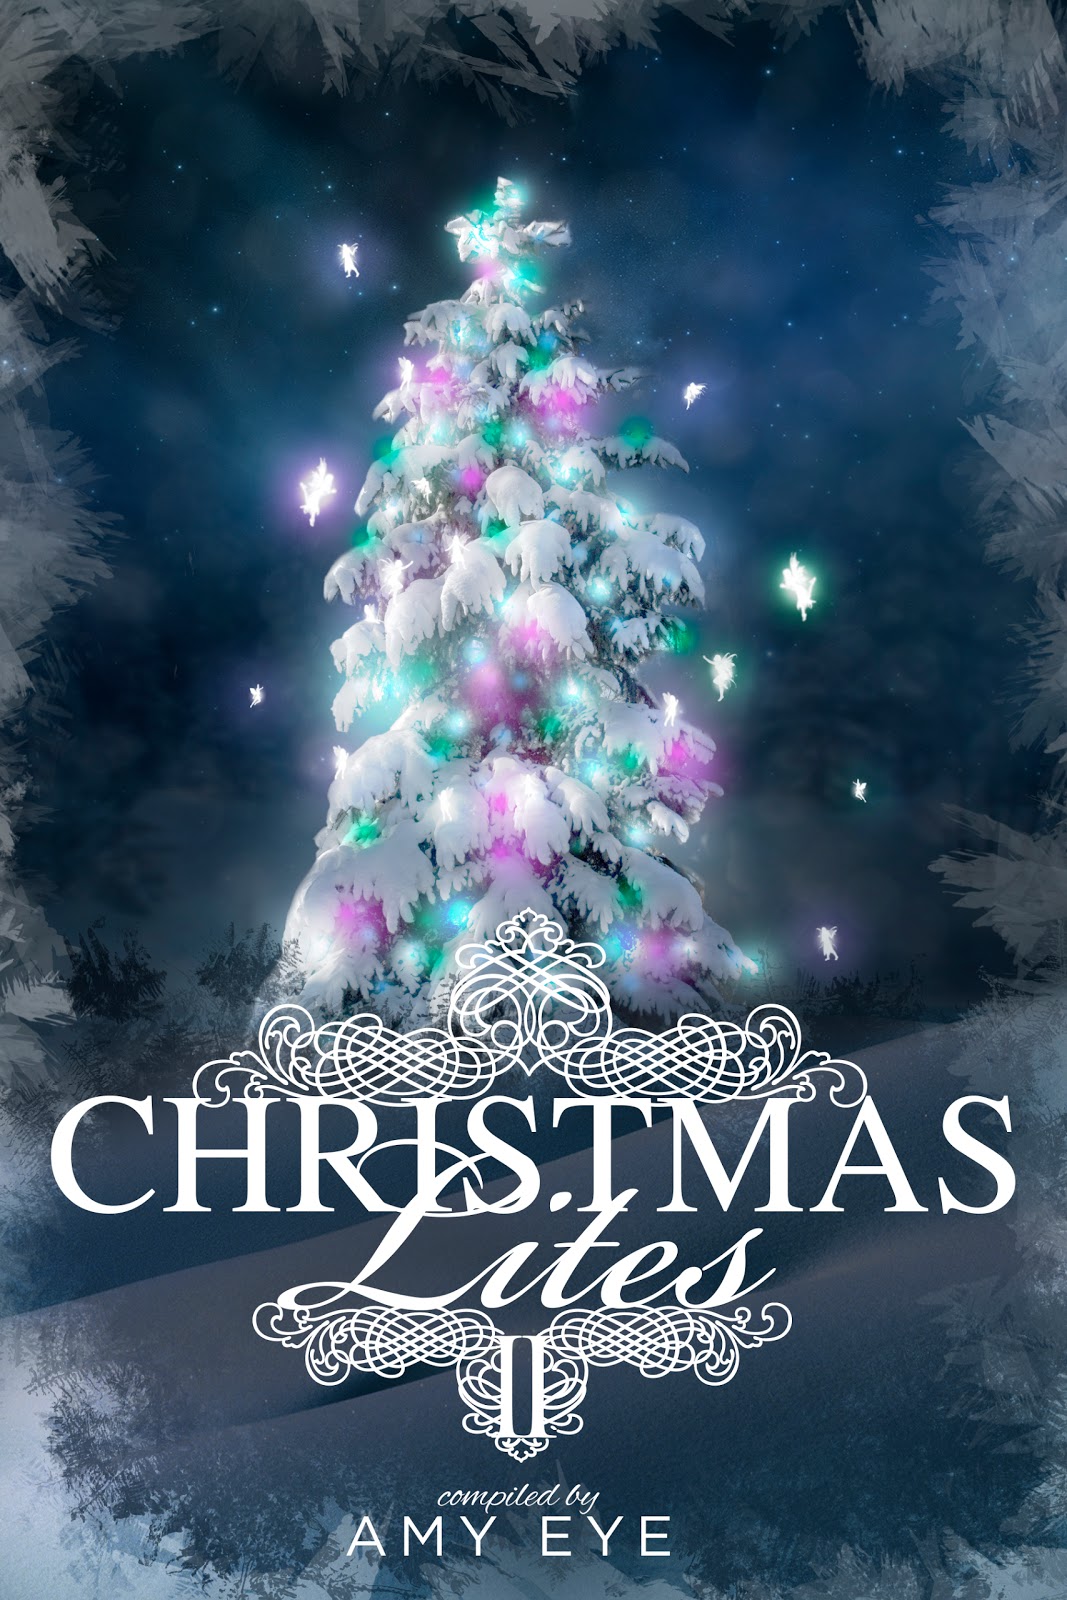 http://4.bp.blogspot.com/-RbVgmQ8SA6E/UMUUt7gf-CI/AAAAAAAAAGw/T_biMpTsAdI/s1600/Christmas+Lites+II+5th+version+print.jpg